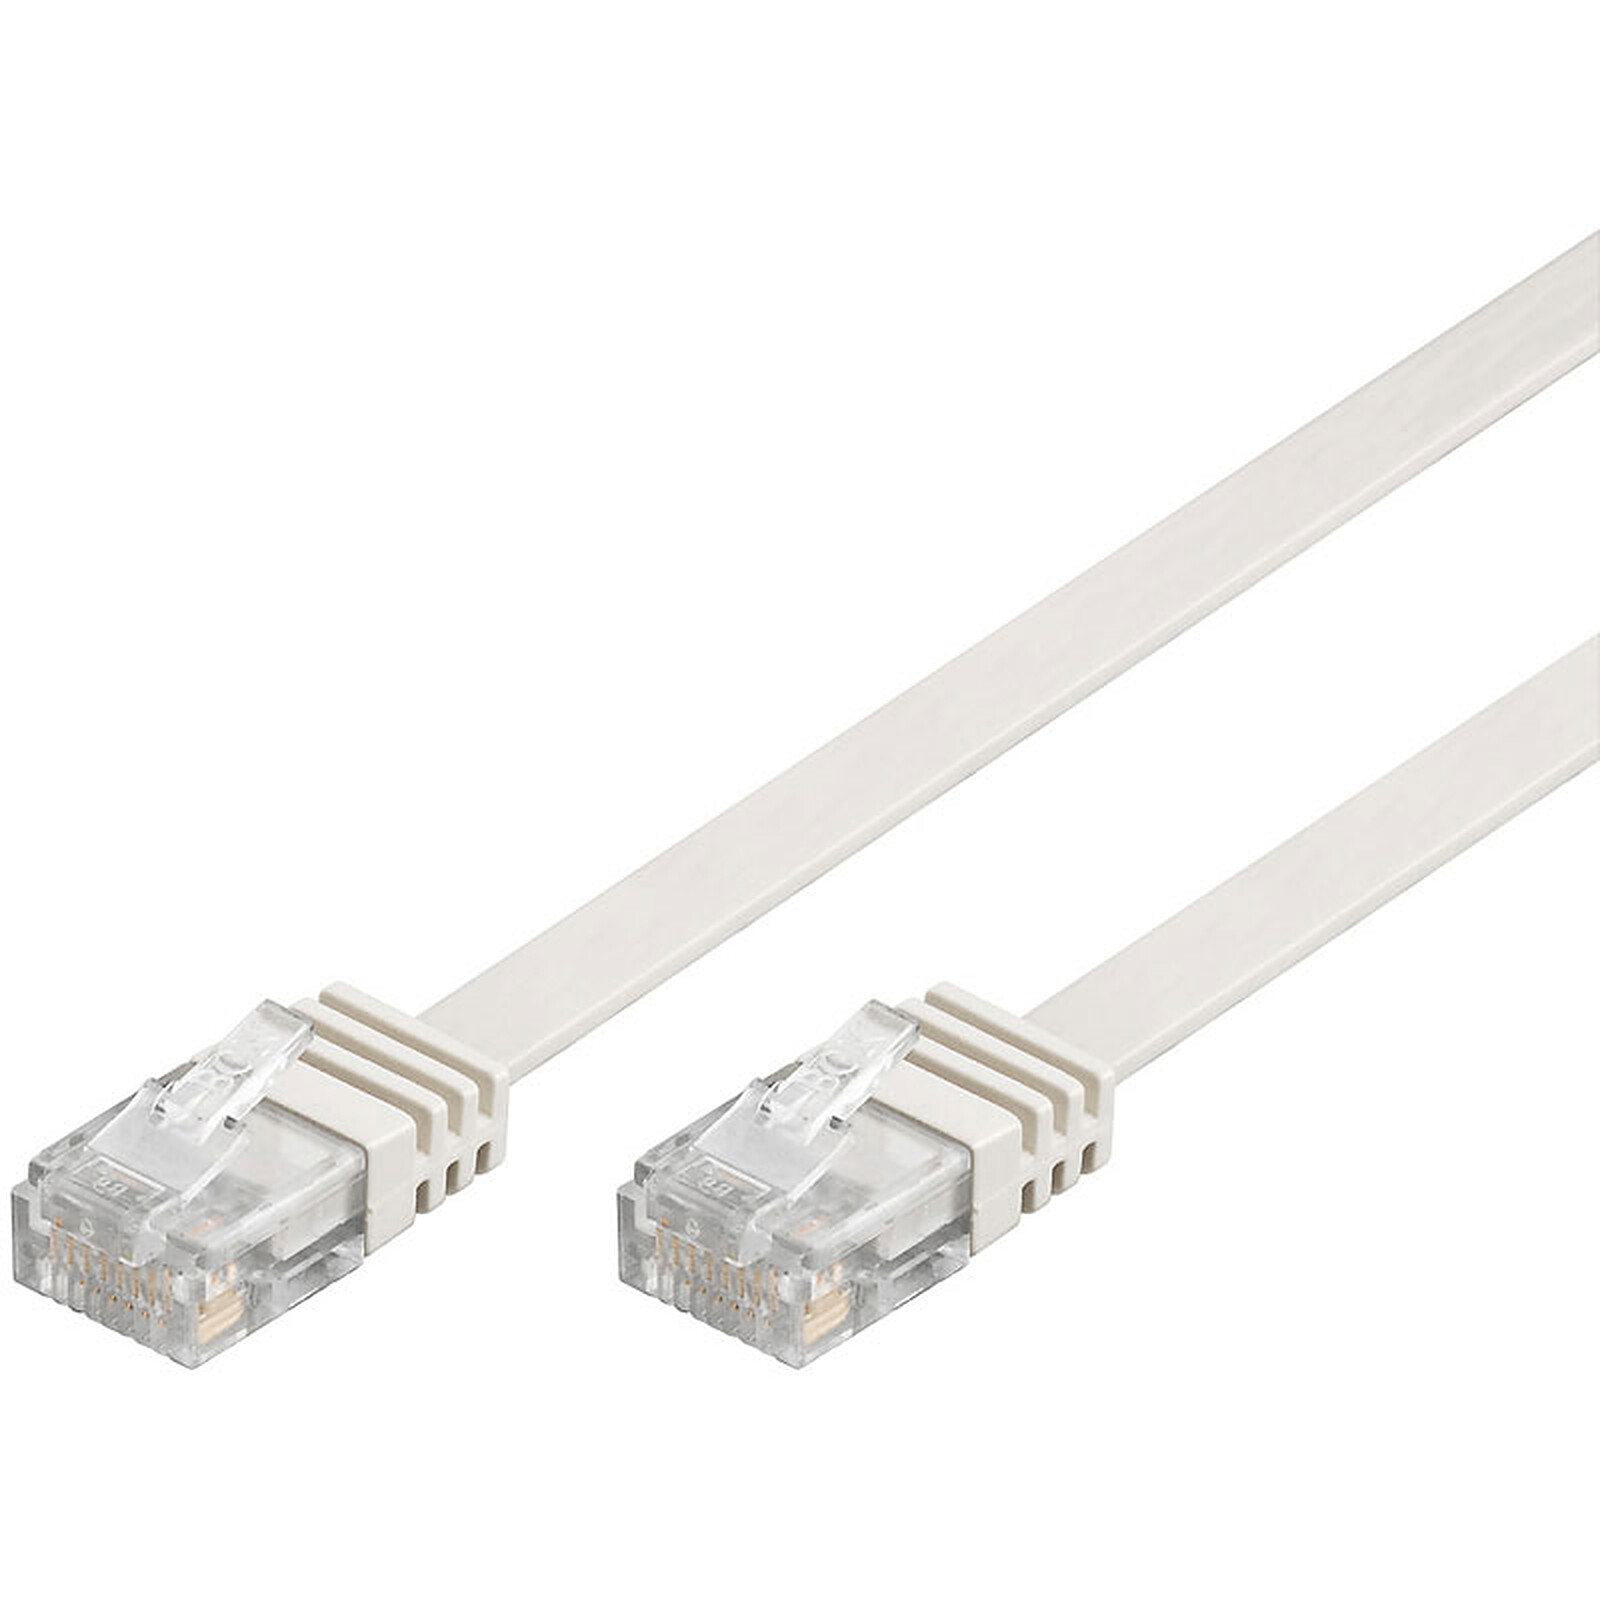 Cable réseau 5m ethernet RJ45 Cat 6 F/UTP Gigabit, gris beige